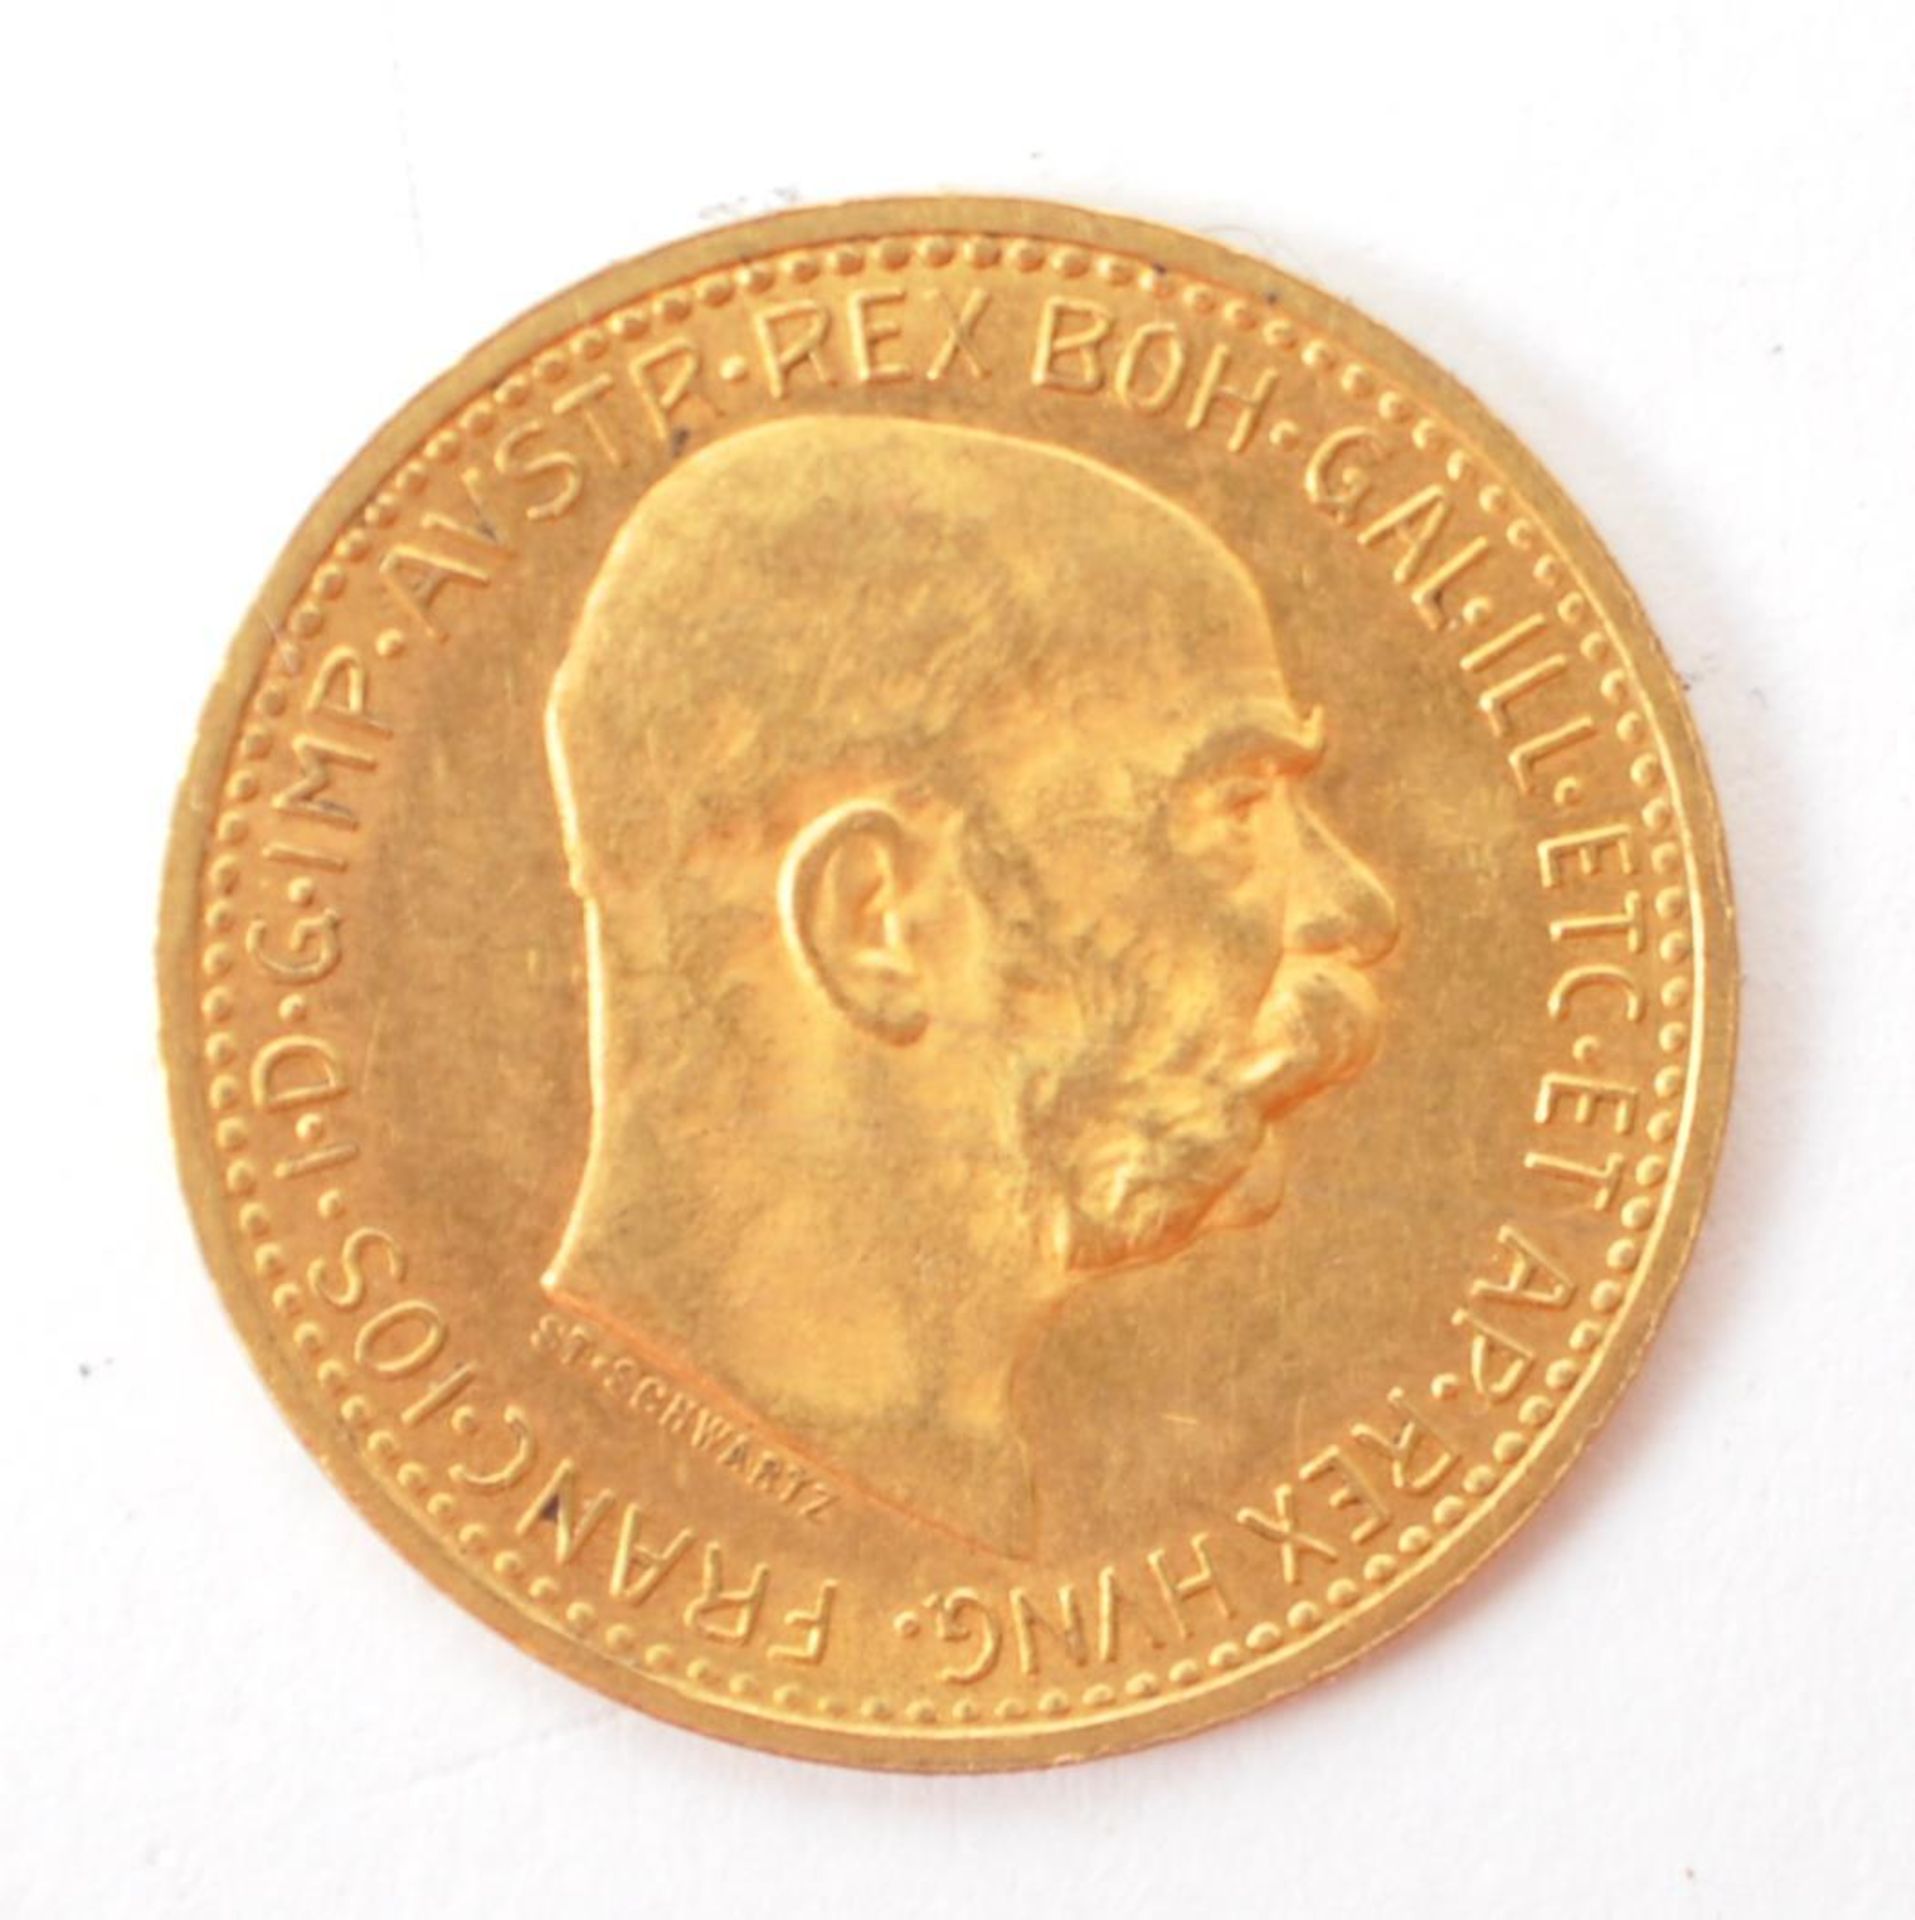 AUSTRIAN FRANZ JOSEPH 10 CORONA GOLD COIN